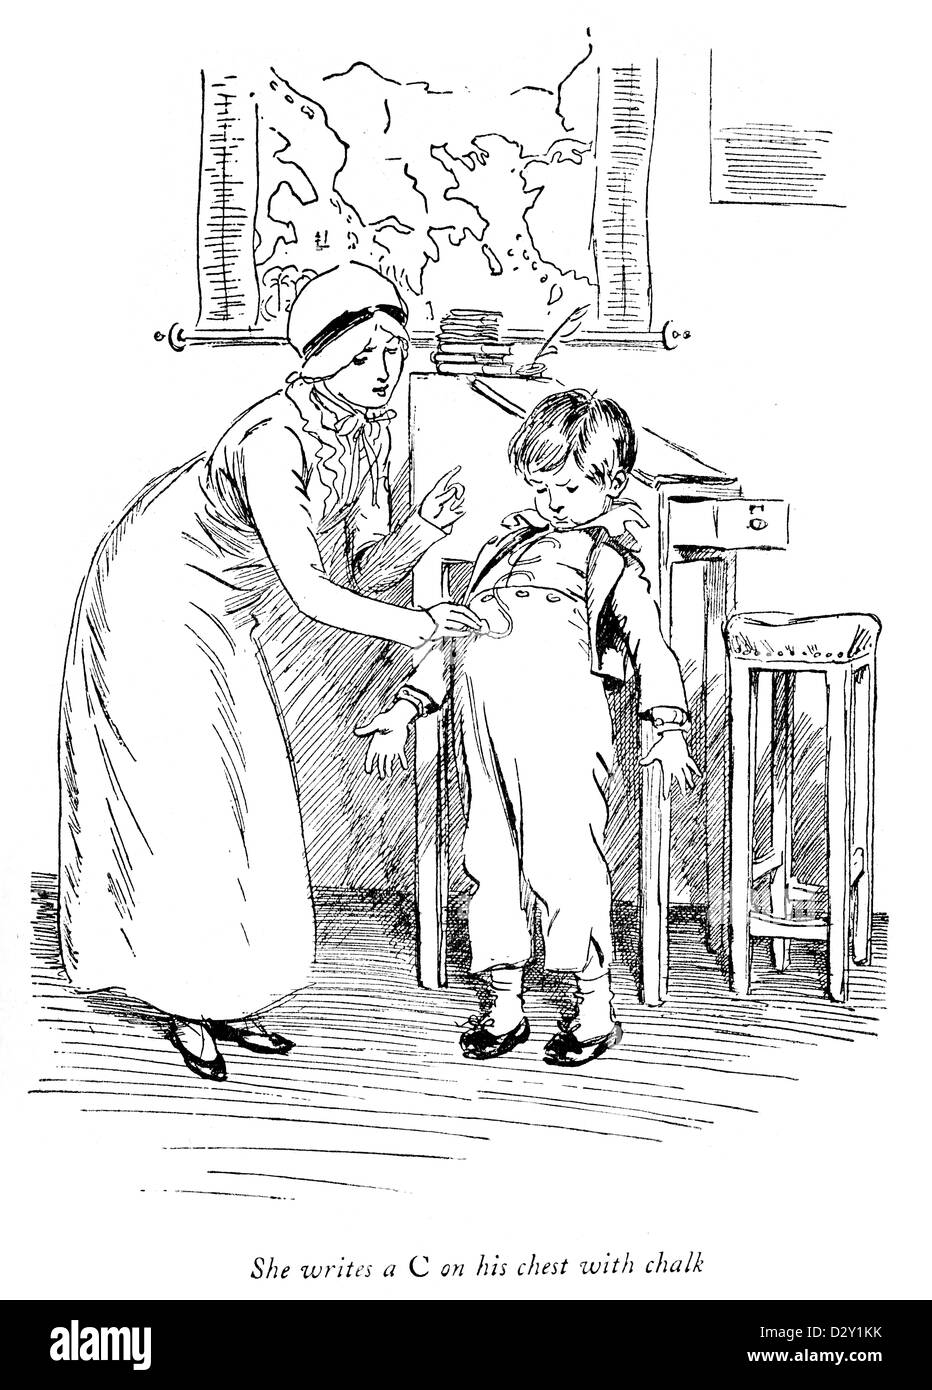 Illustration de la qualité de jeu J. M. Barrie Street, une comédie sur deux sœurs qui commencent une école pour enfants "distinguée". Banque D'Images